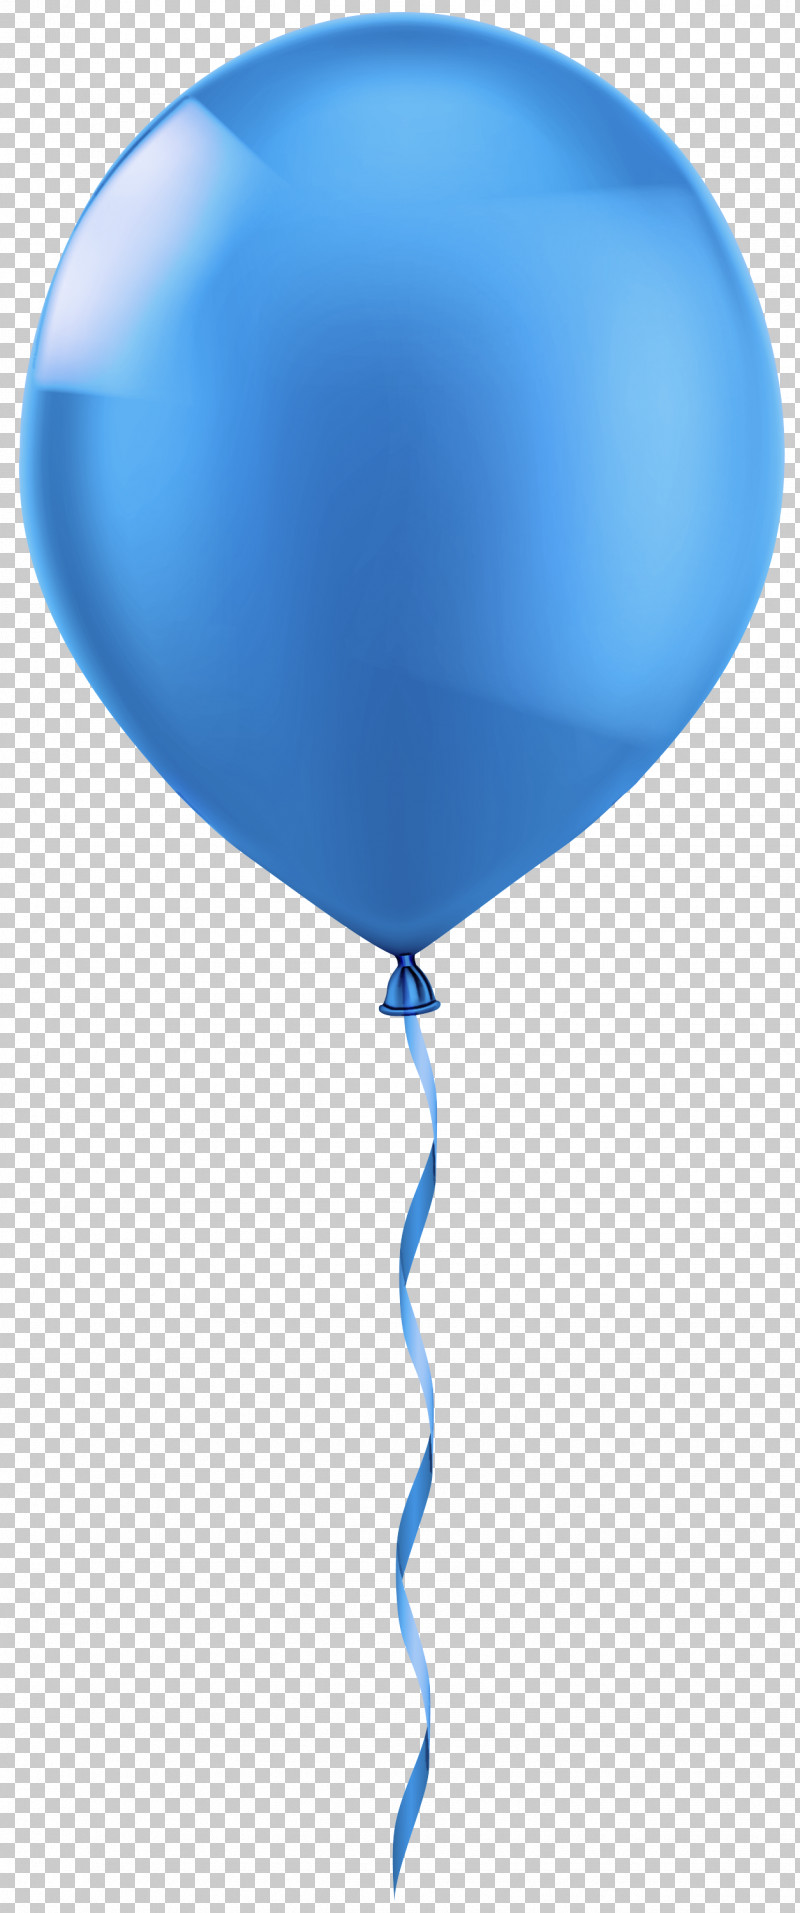 Hot Air Balloon PNG, Clipart, Balloon, Blue, Electric Blue, Heart, Hot Air Balloon Free PNG Download